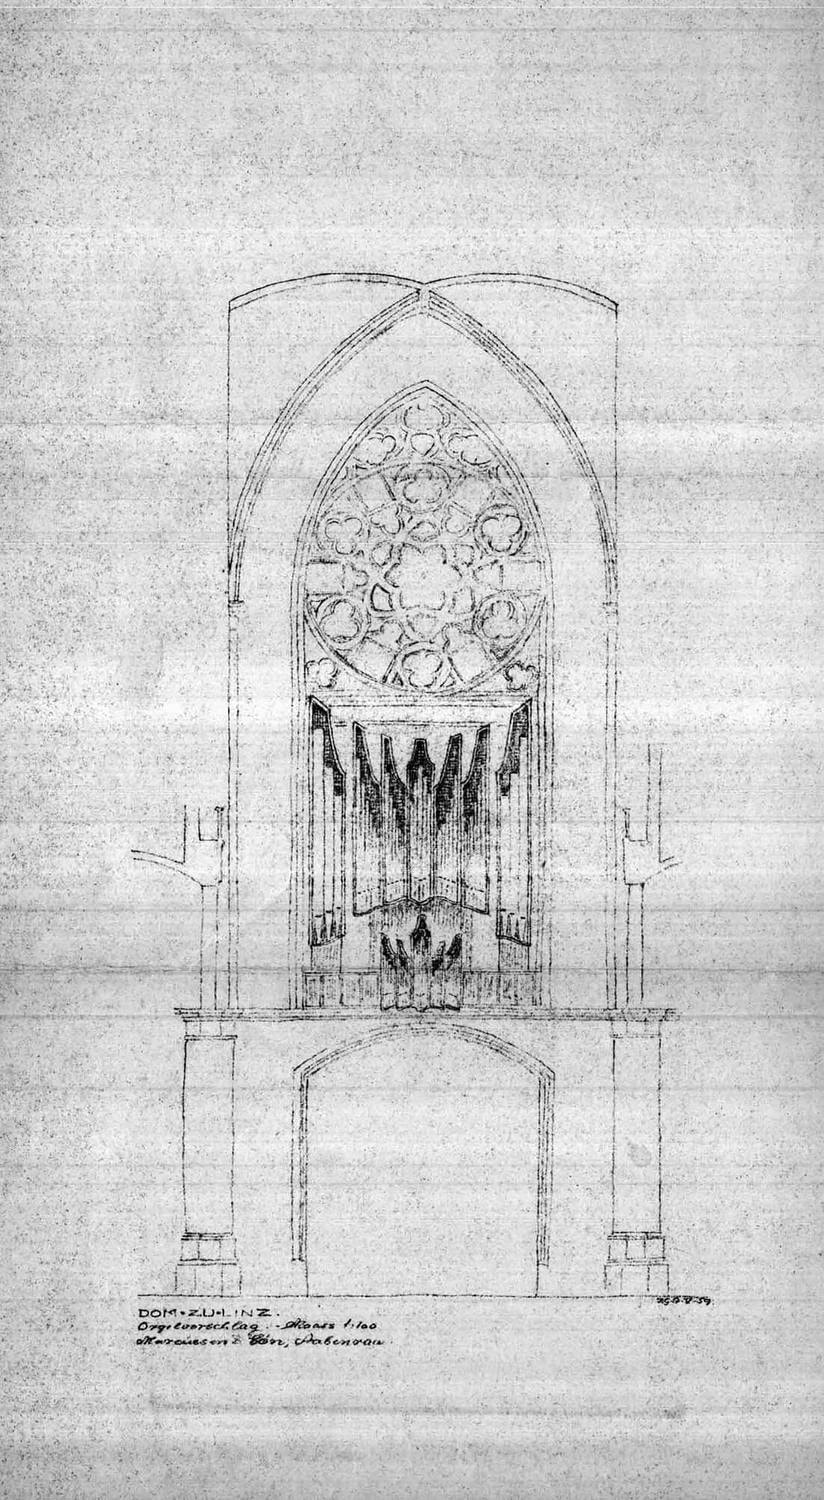 „Dom zu Linz – Orgelvorschlag“ im Maßstab 1:100 der Orgelbaufirma Marcussen & Søn (Mai 1959).